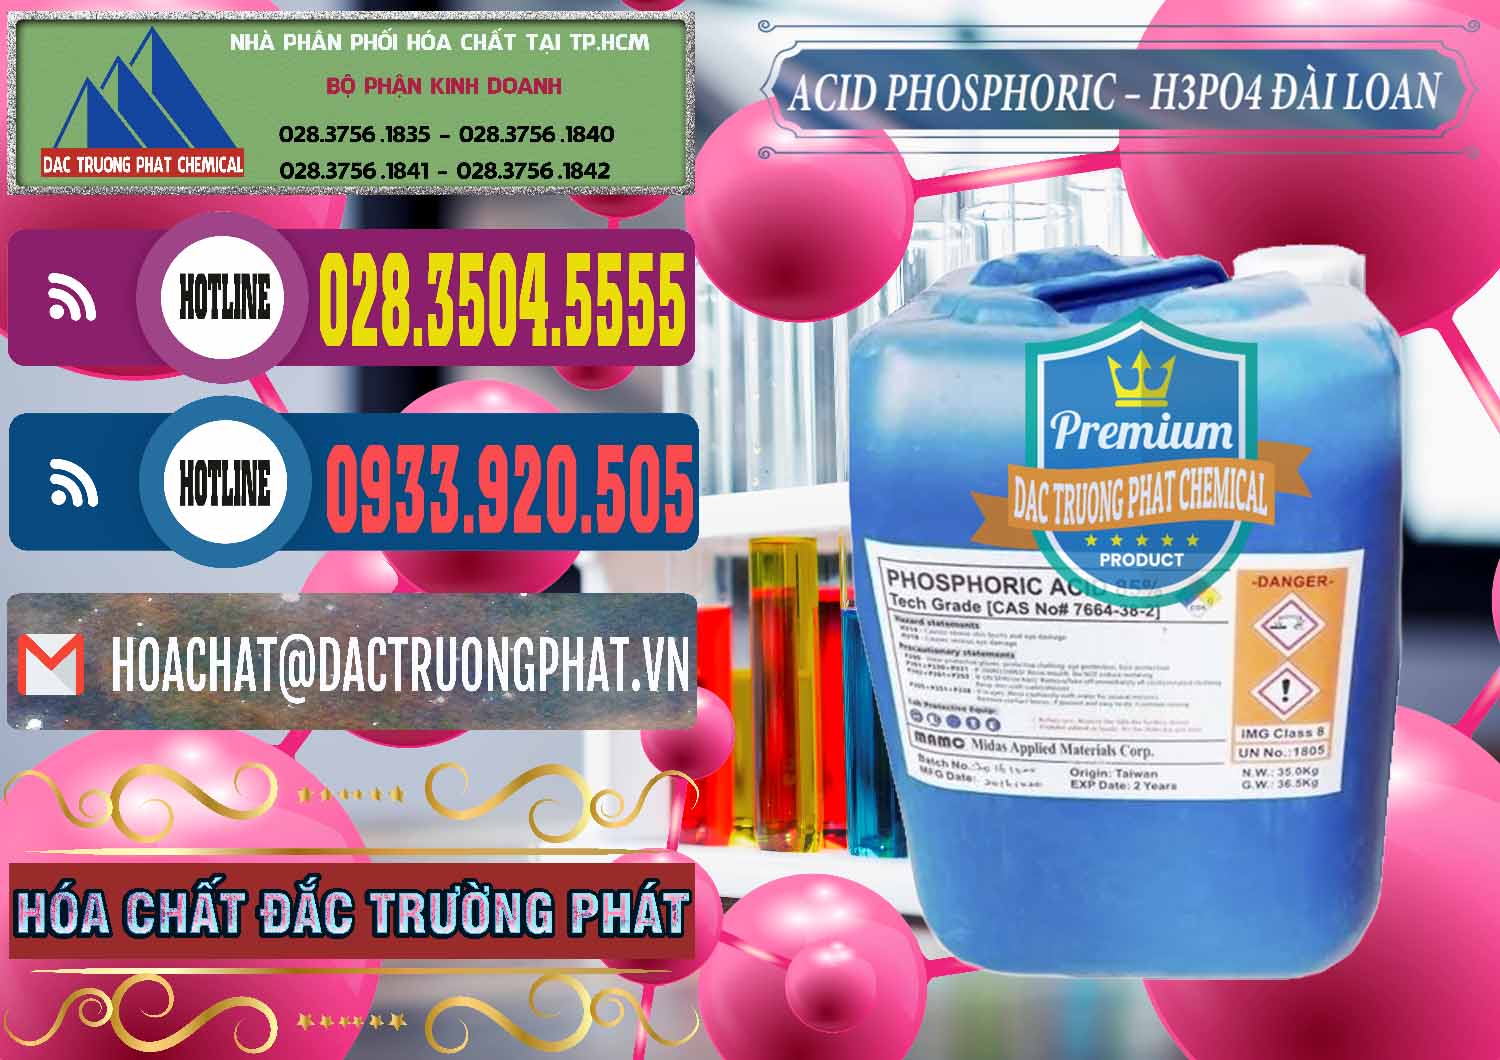 Công ty chuyên cung cấp ( bán ) Axit Phosphoric - Acid Phosphoric H3PO4 85% Đài Loan Taiwan - 0351 - Nơi chuyên phân phối - bán hóa chất tại TP.HCM - muabanhoachat.com.vn